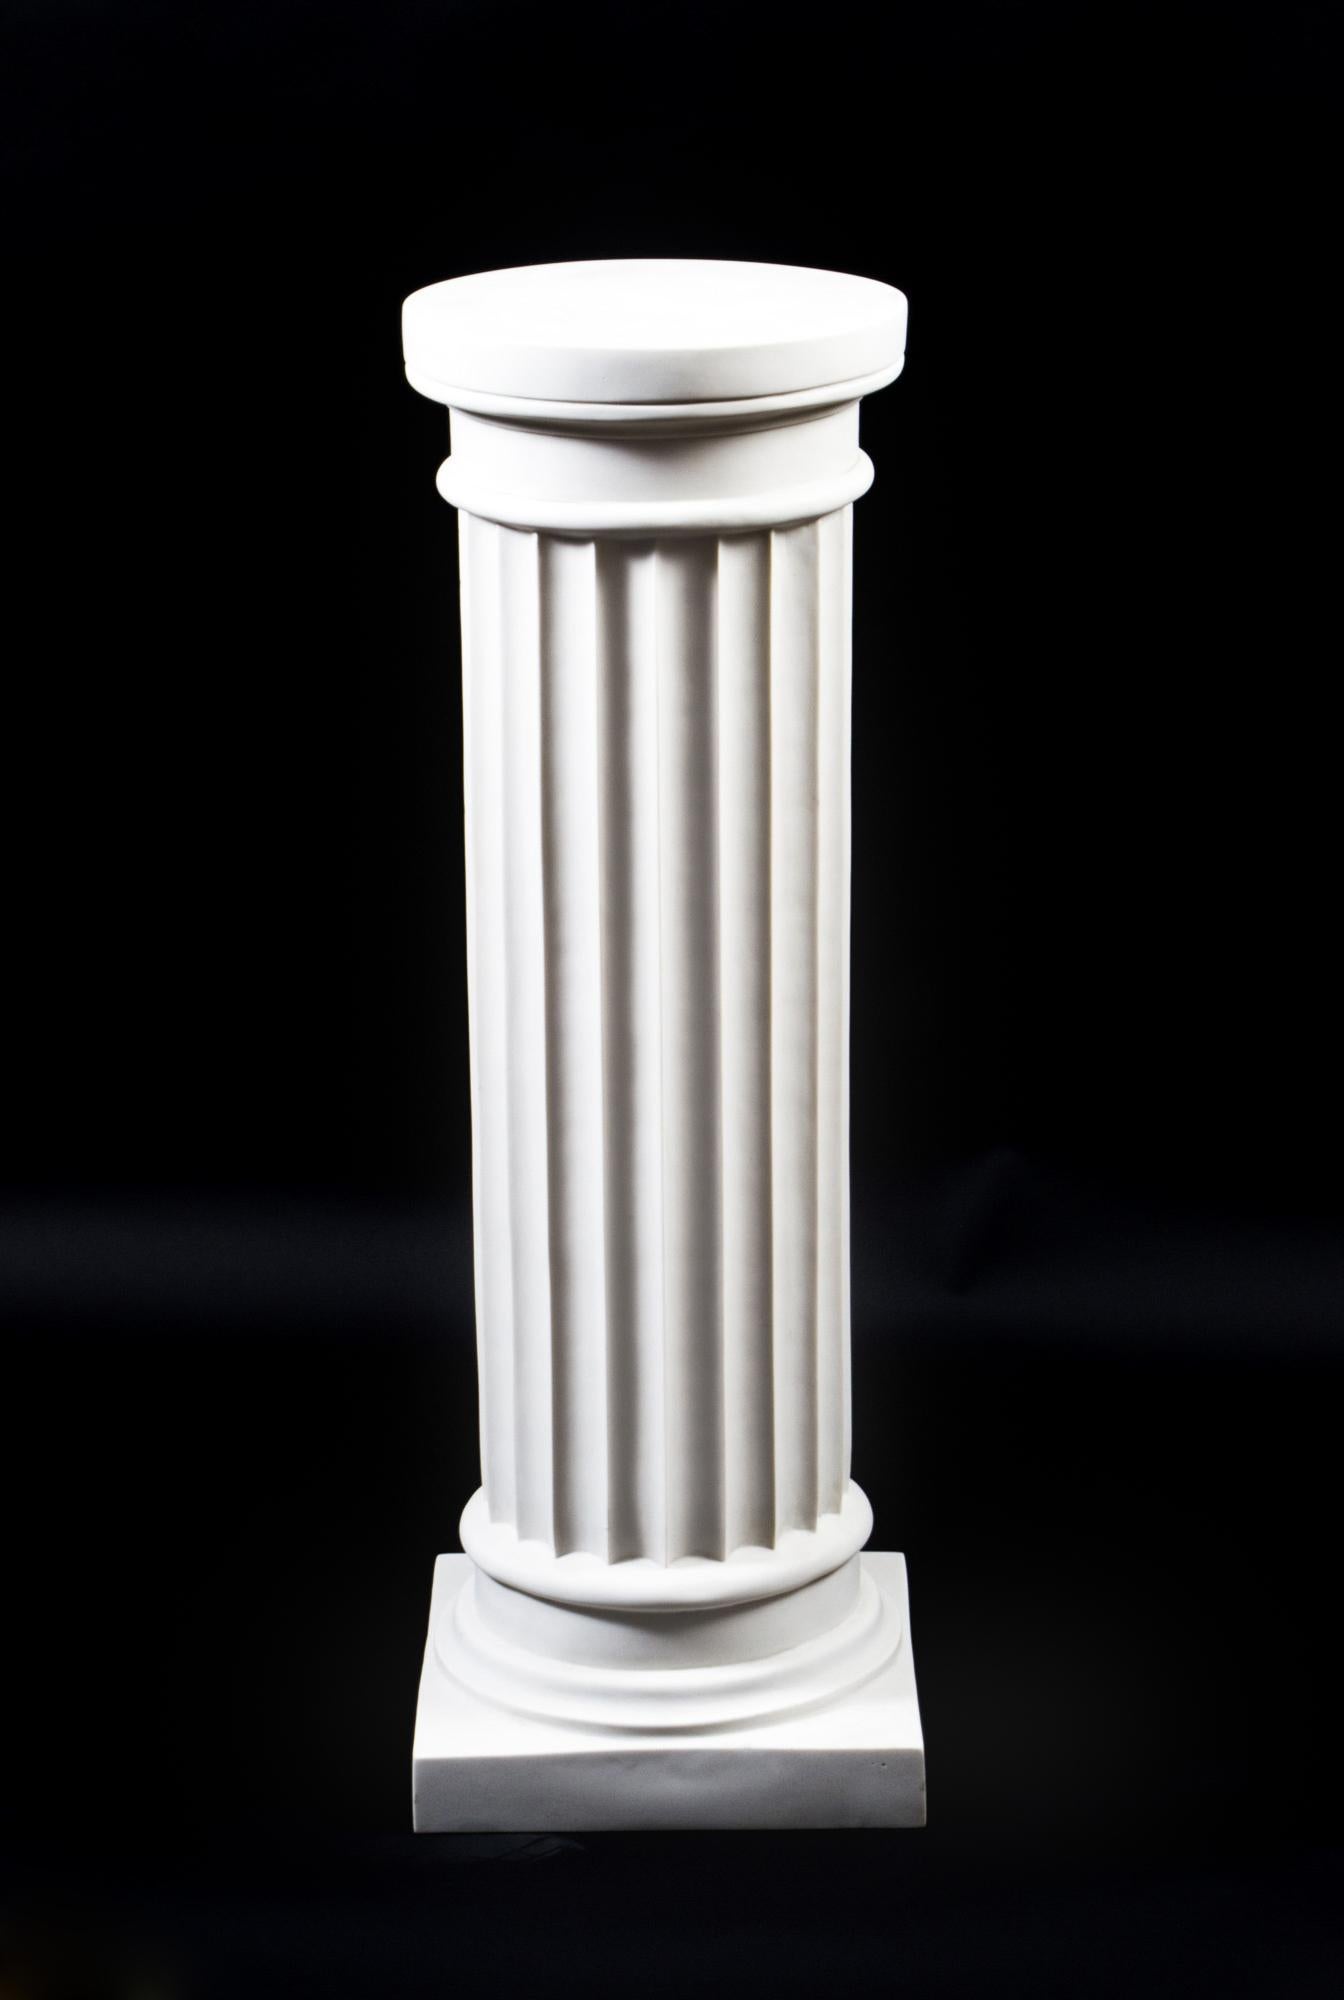 Un élégant piédestal vintage en forme de colonne dorique de l'Antiquité grecque classique datant de la fin du XXe siècle.

La colonne a un corps cannelé avec des chapiteaux unis et non décorés et se rétrécit légèrement en circonférence vers la